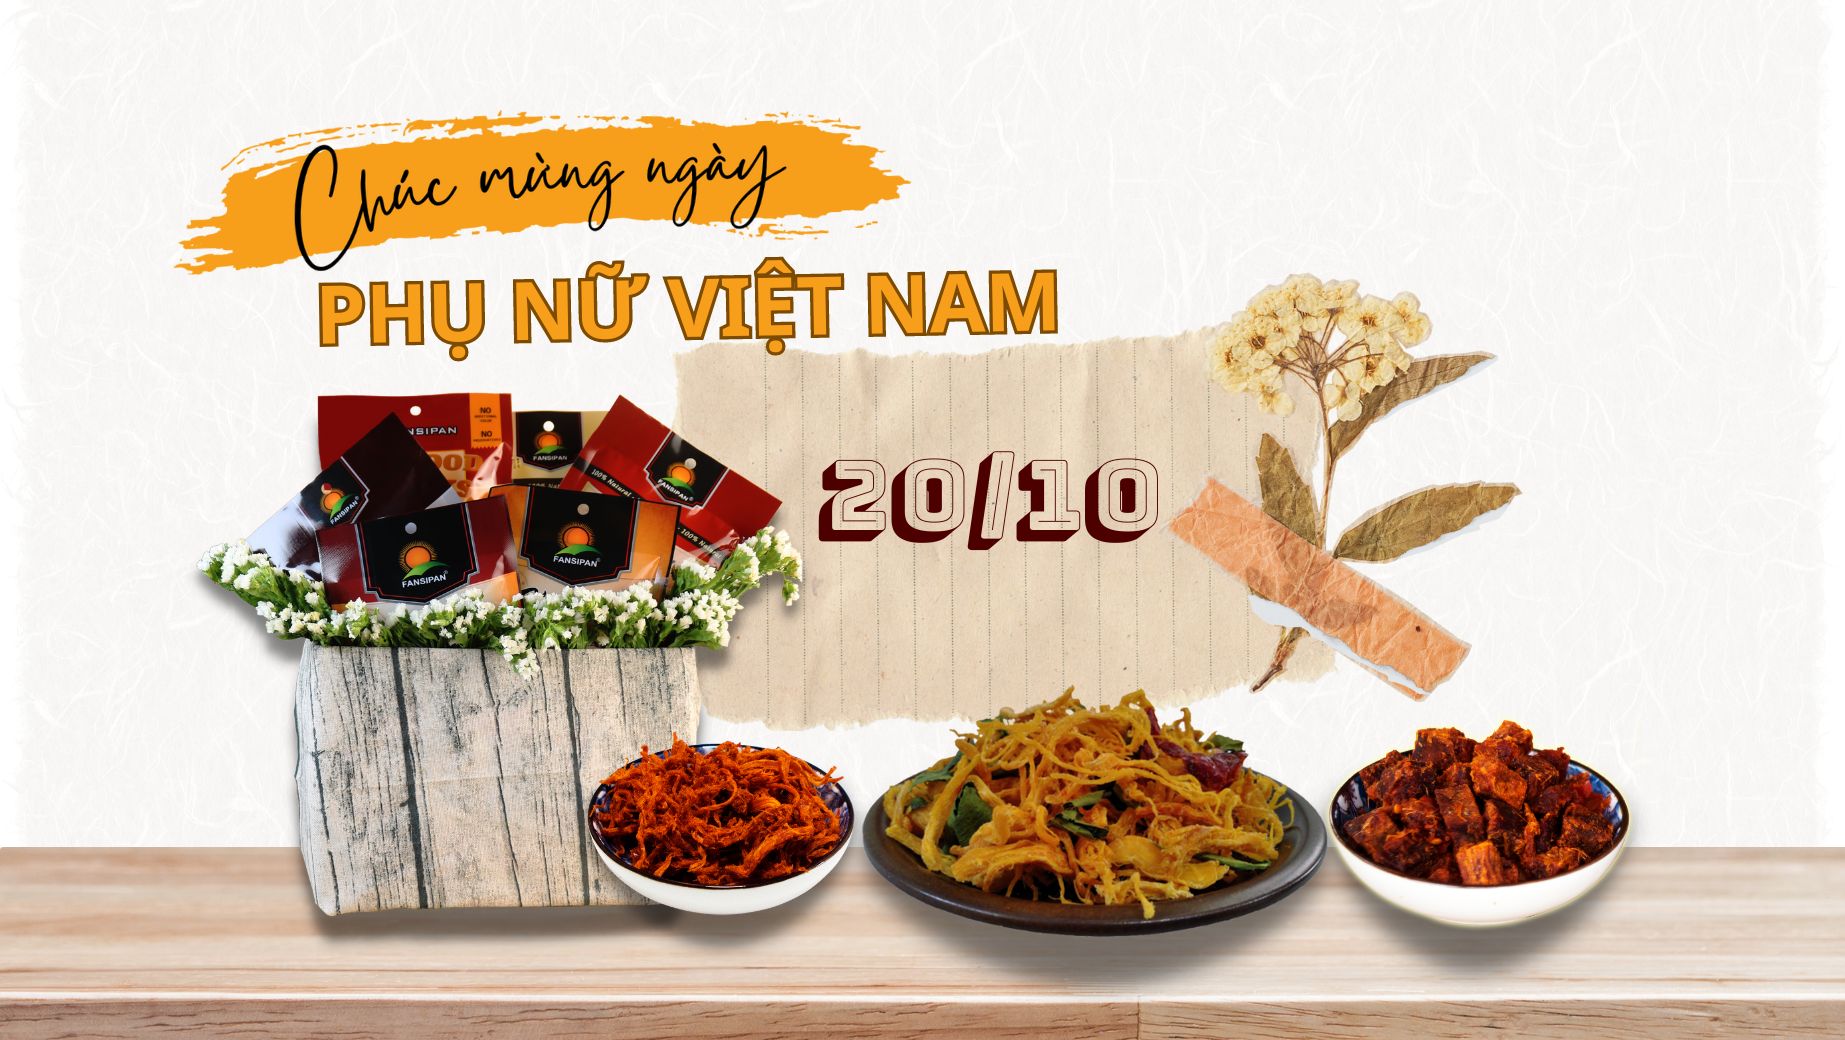 Thực phẩm Fansipan chào mừng ngày phụ nữ Việt Nam